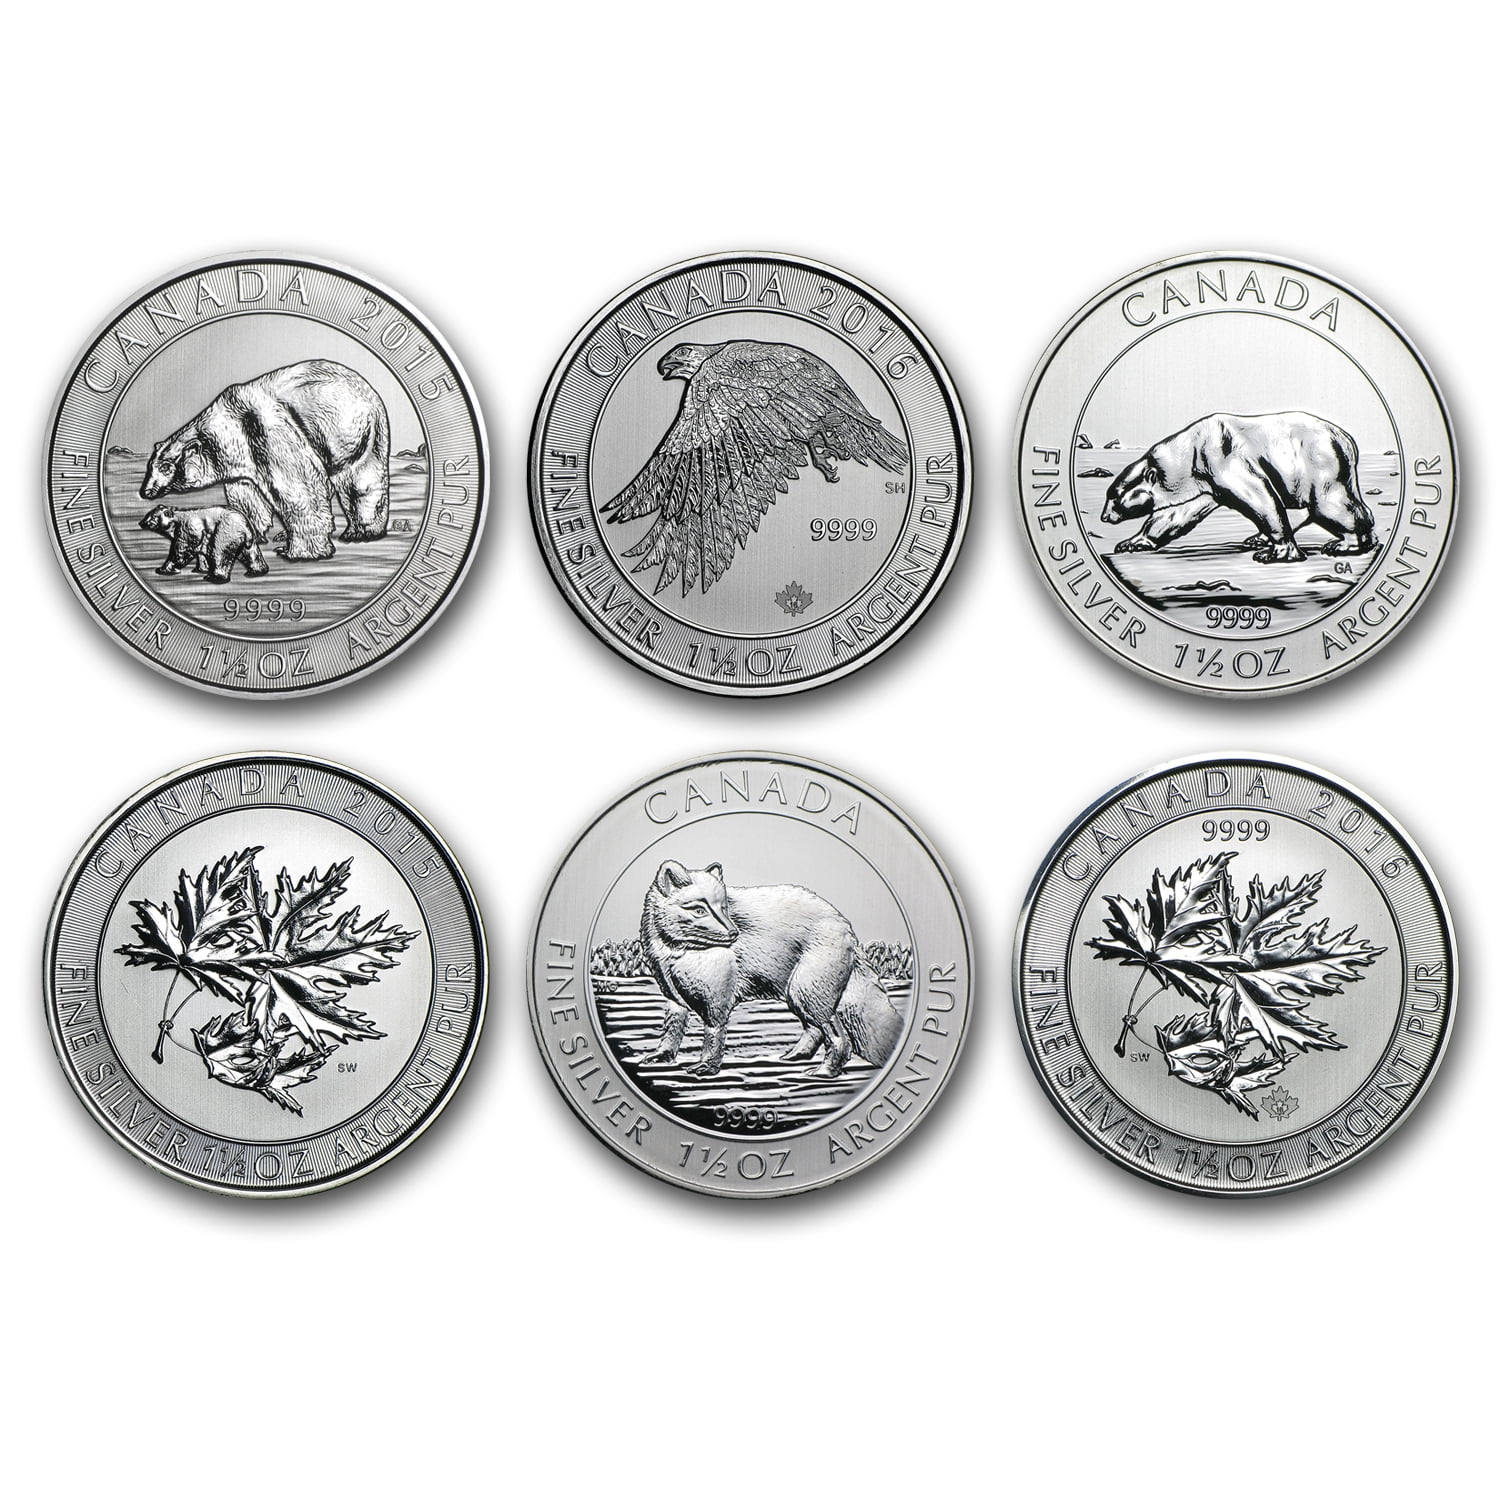 2016 1.5 oz Canadian Silver White Falcon $8 Coin .9999 Fine BU